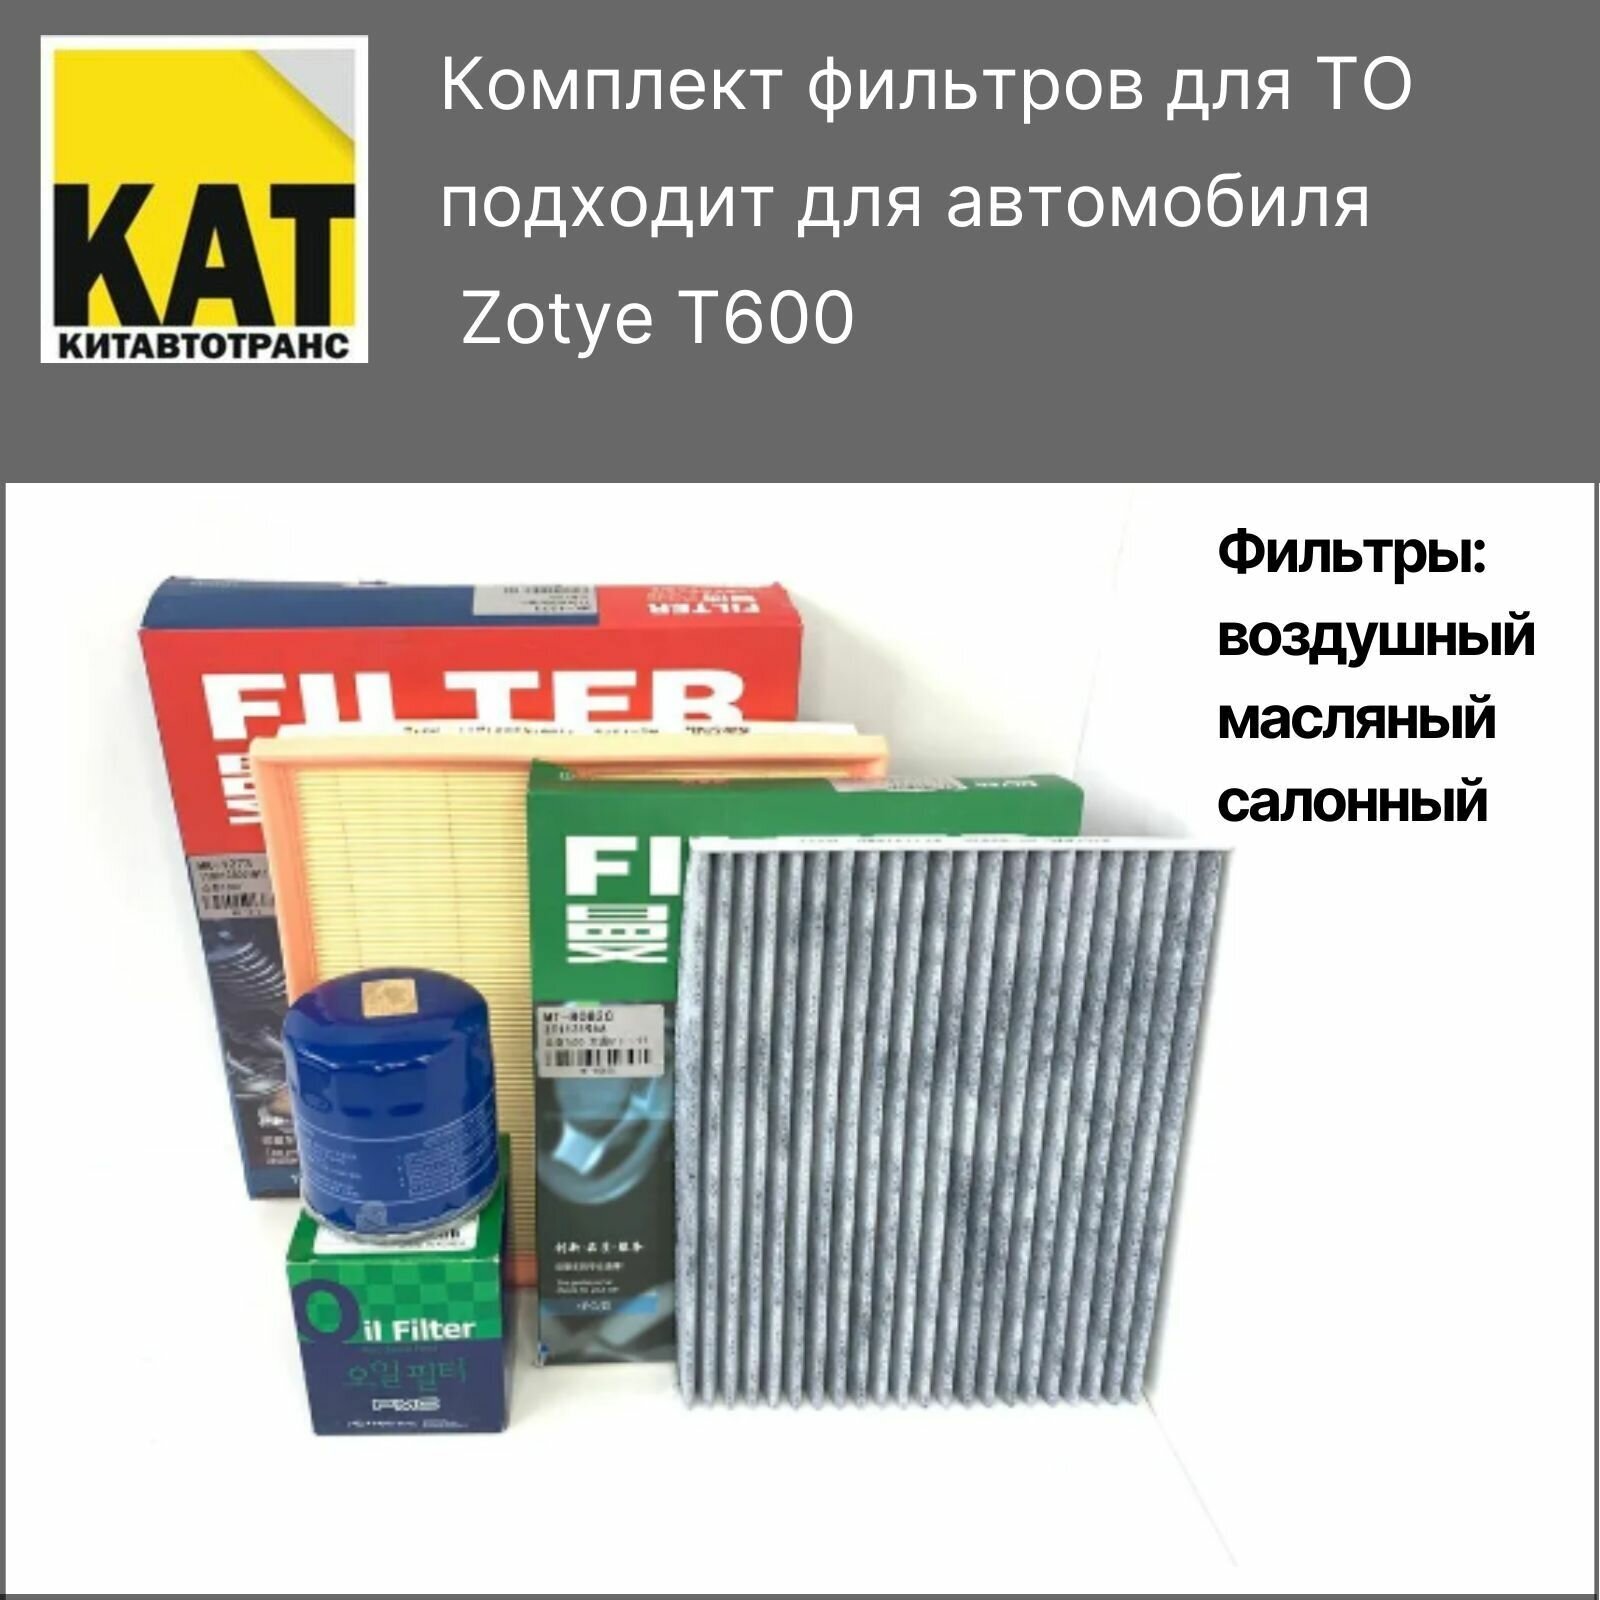 Фильтр воздушный + масляный + салонный Зоти Т600 (Zotye T600)